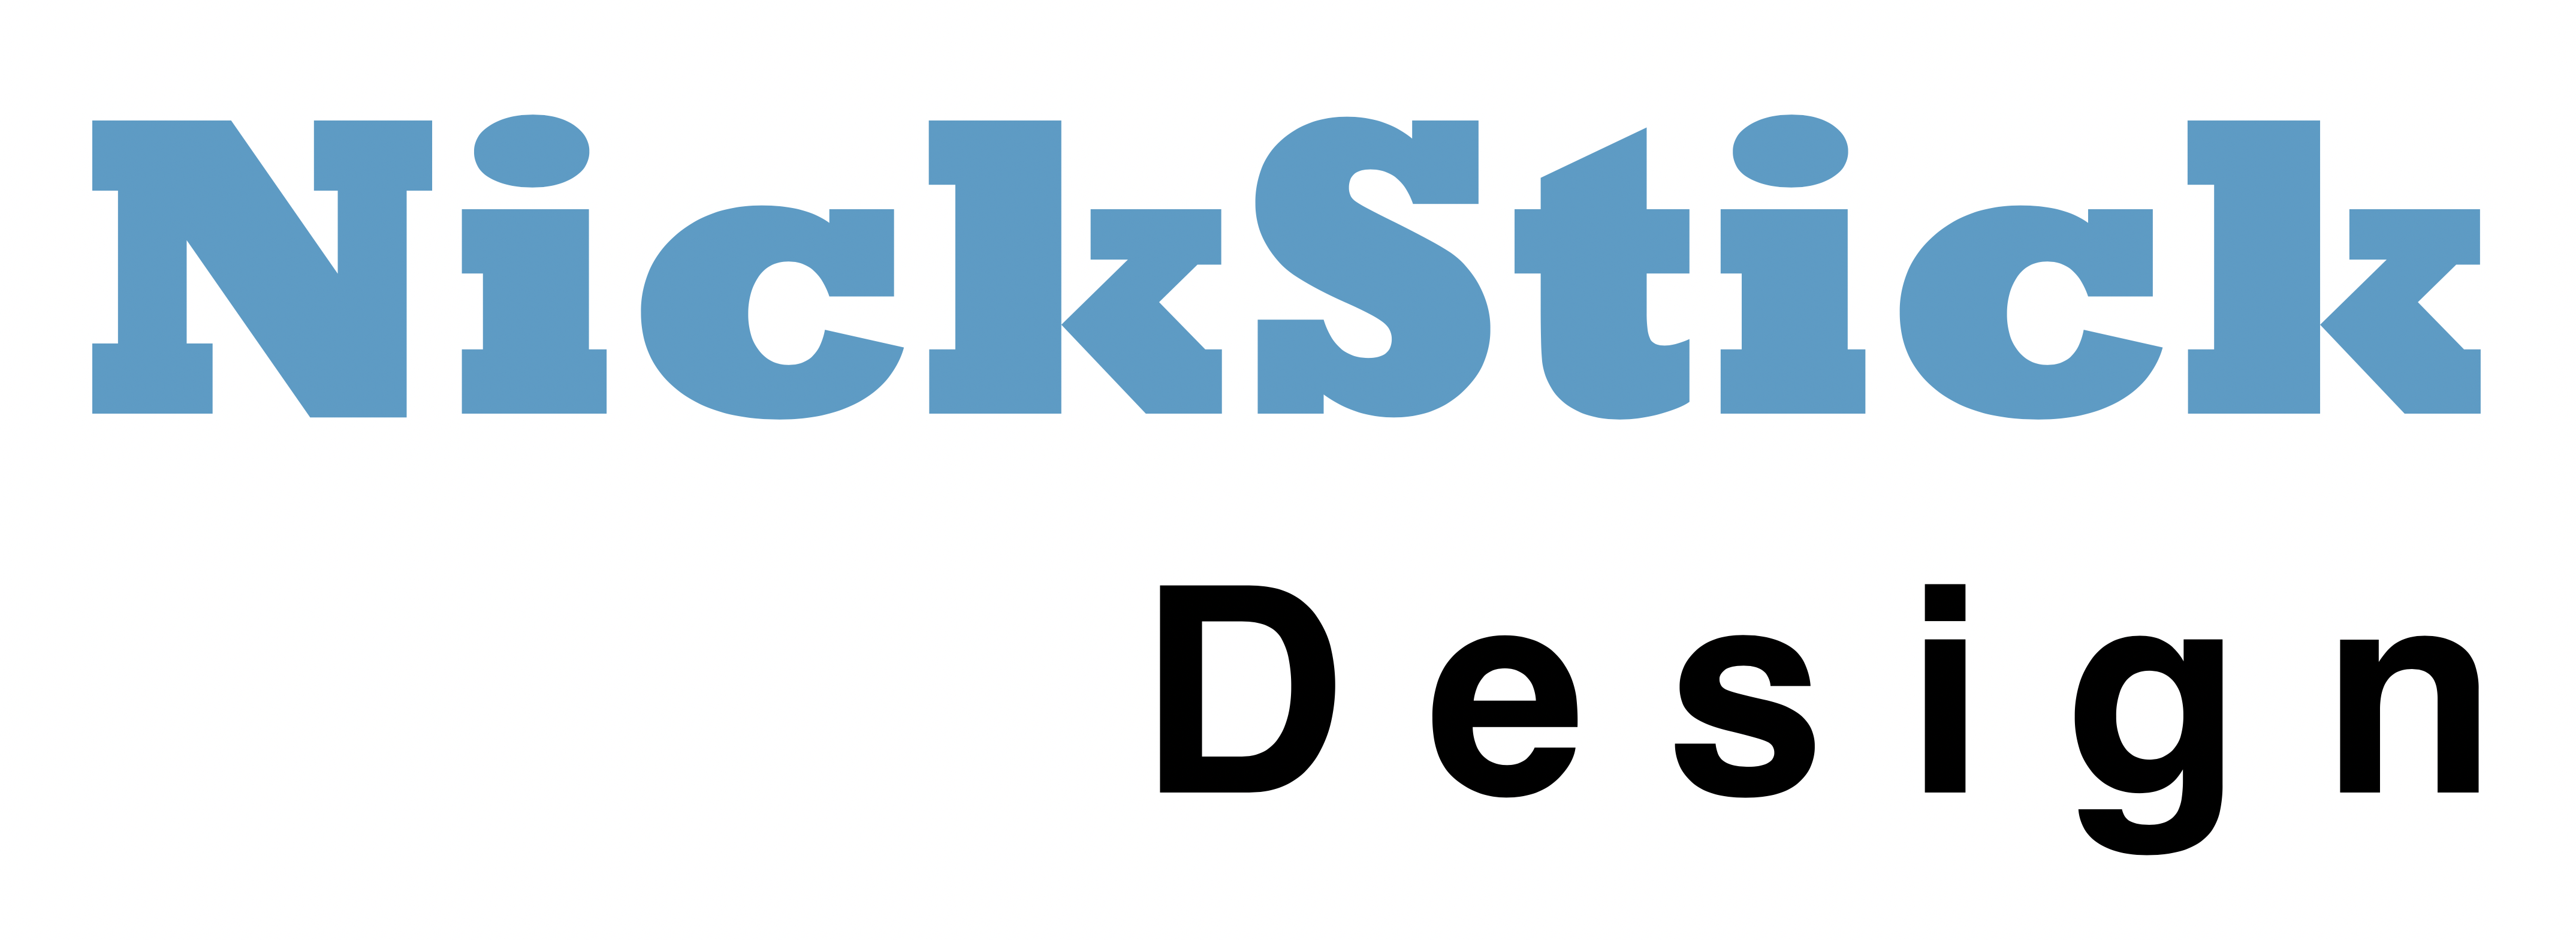 nickstick design logo